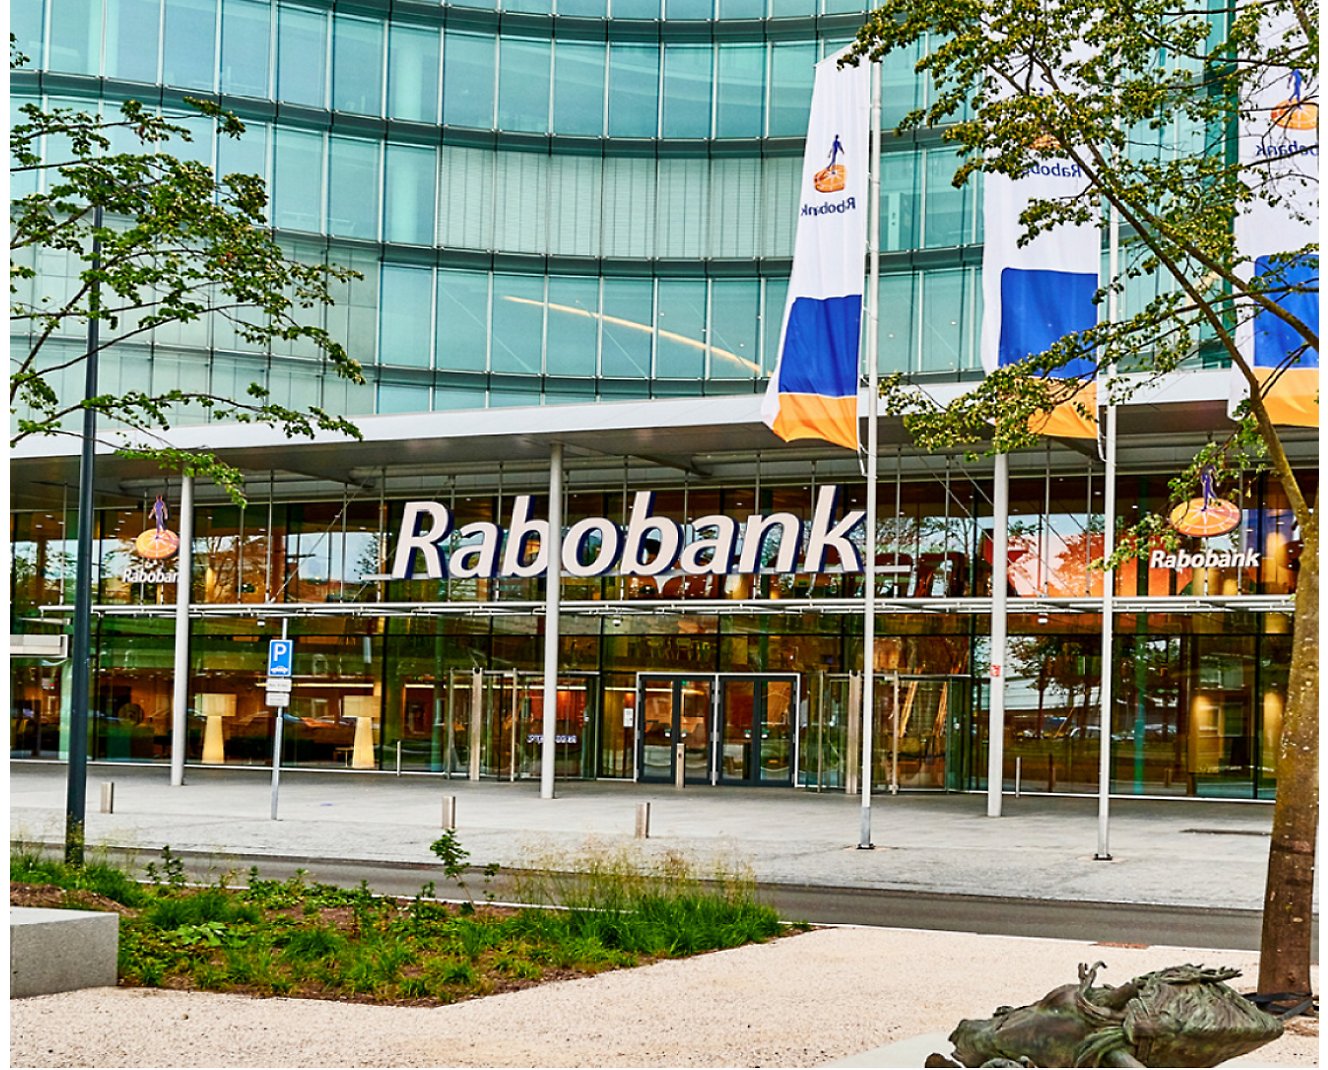 Um prédio com uma placa que diz Rabobank.